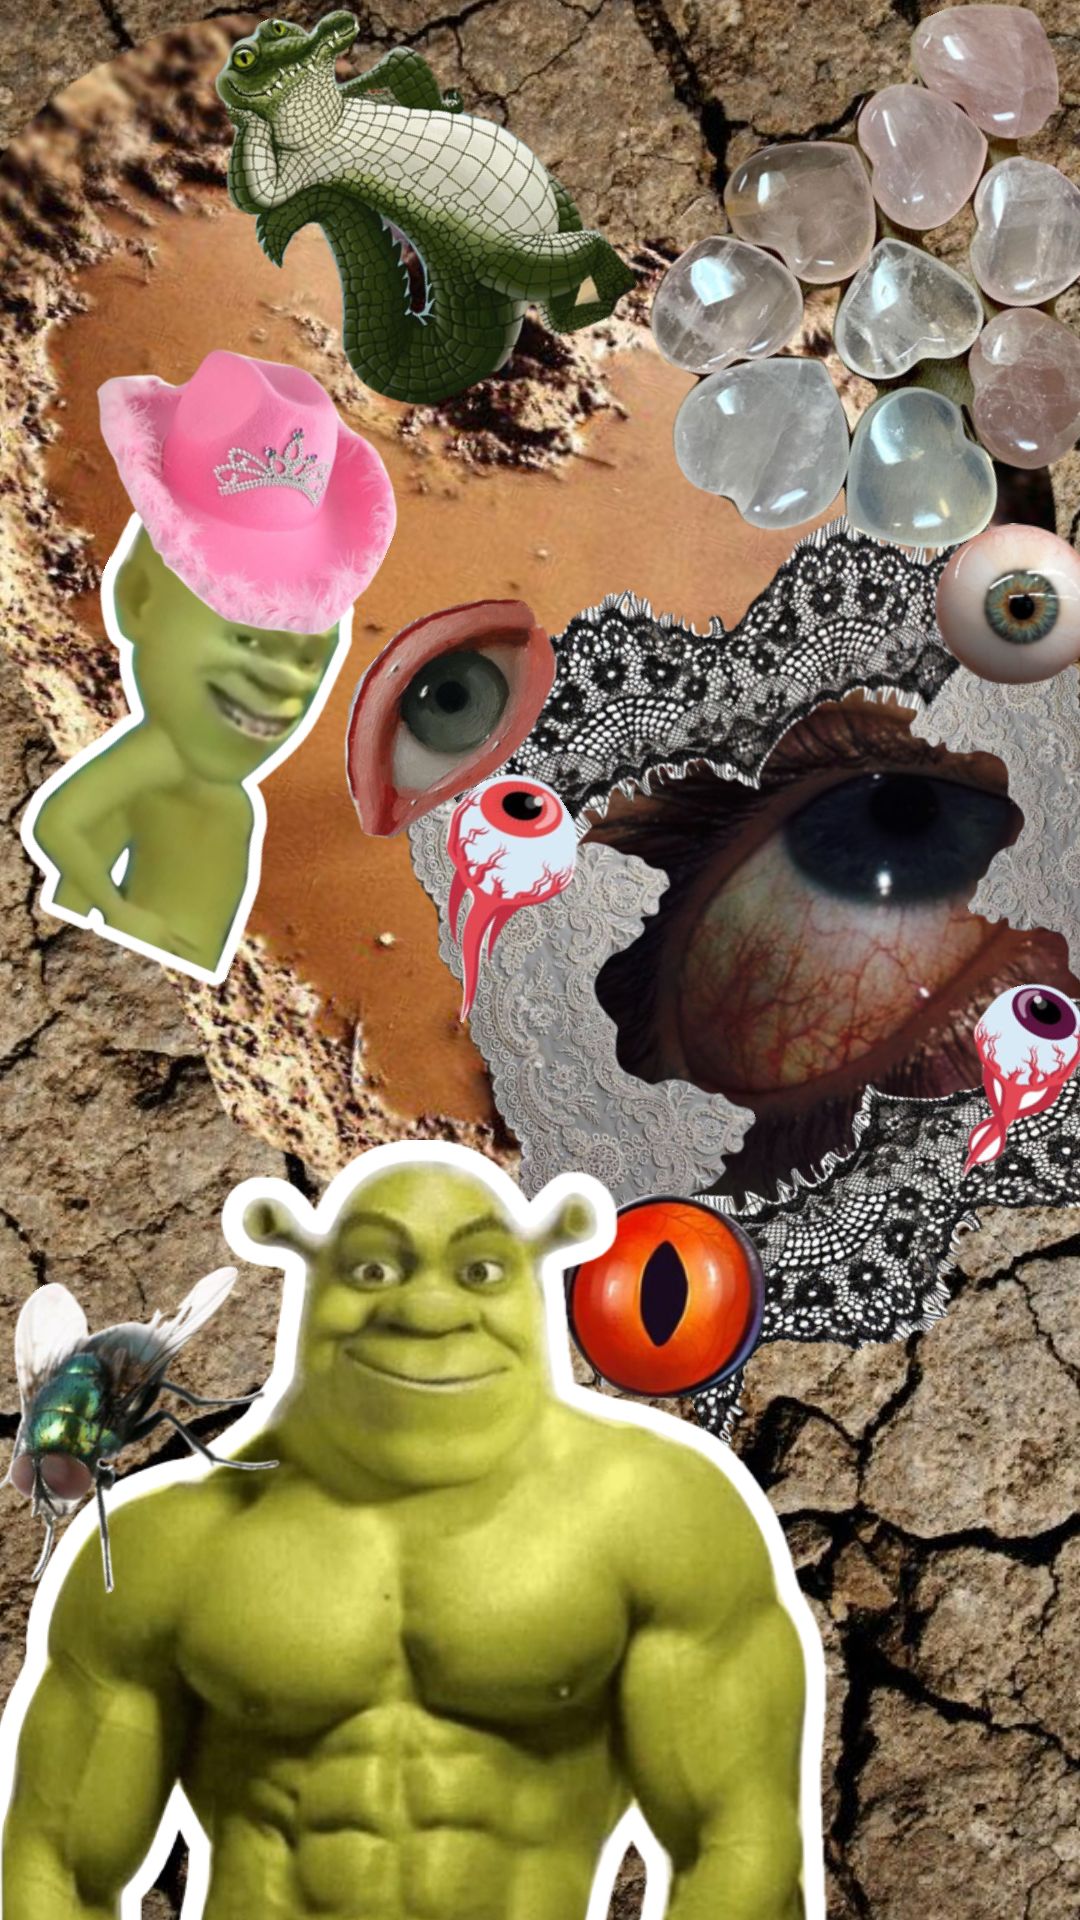 Shrek, a pink cowboy hat, a crocodile, a human eye, a red eye, a fly, a crystal ball, and a snake - Shrek